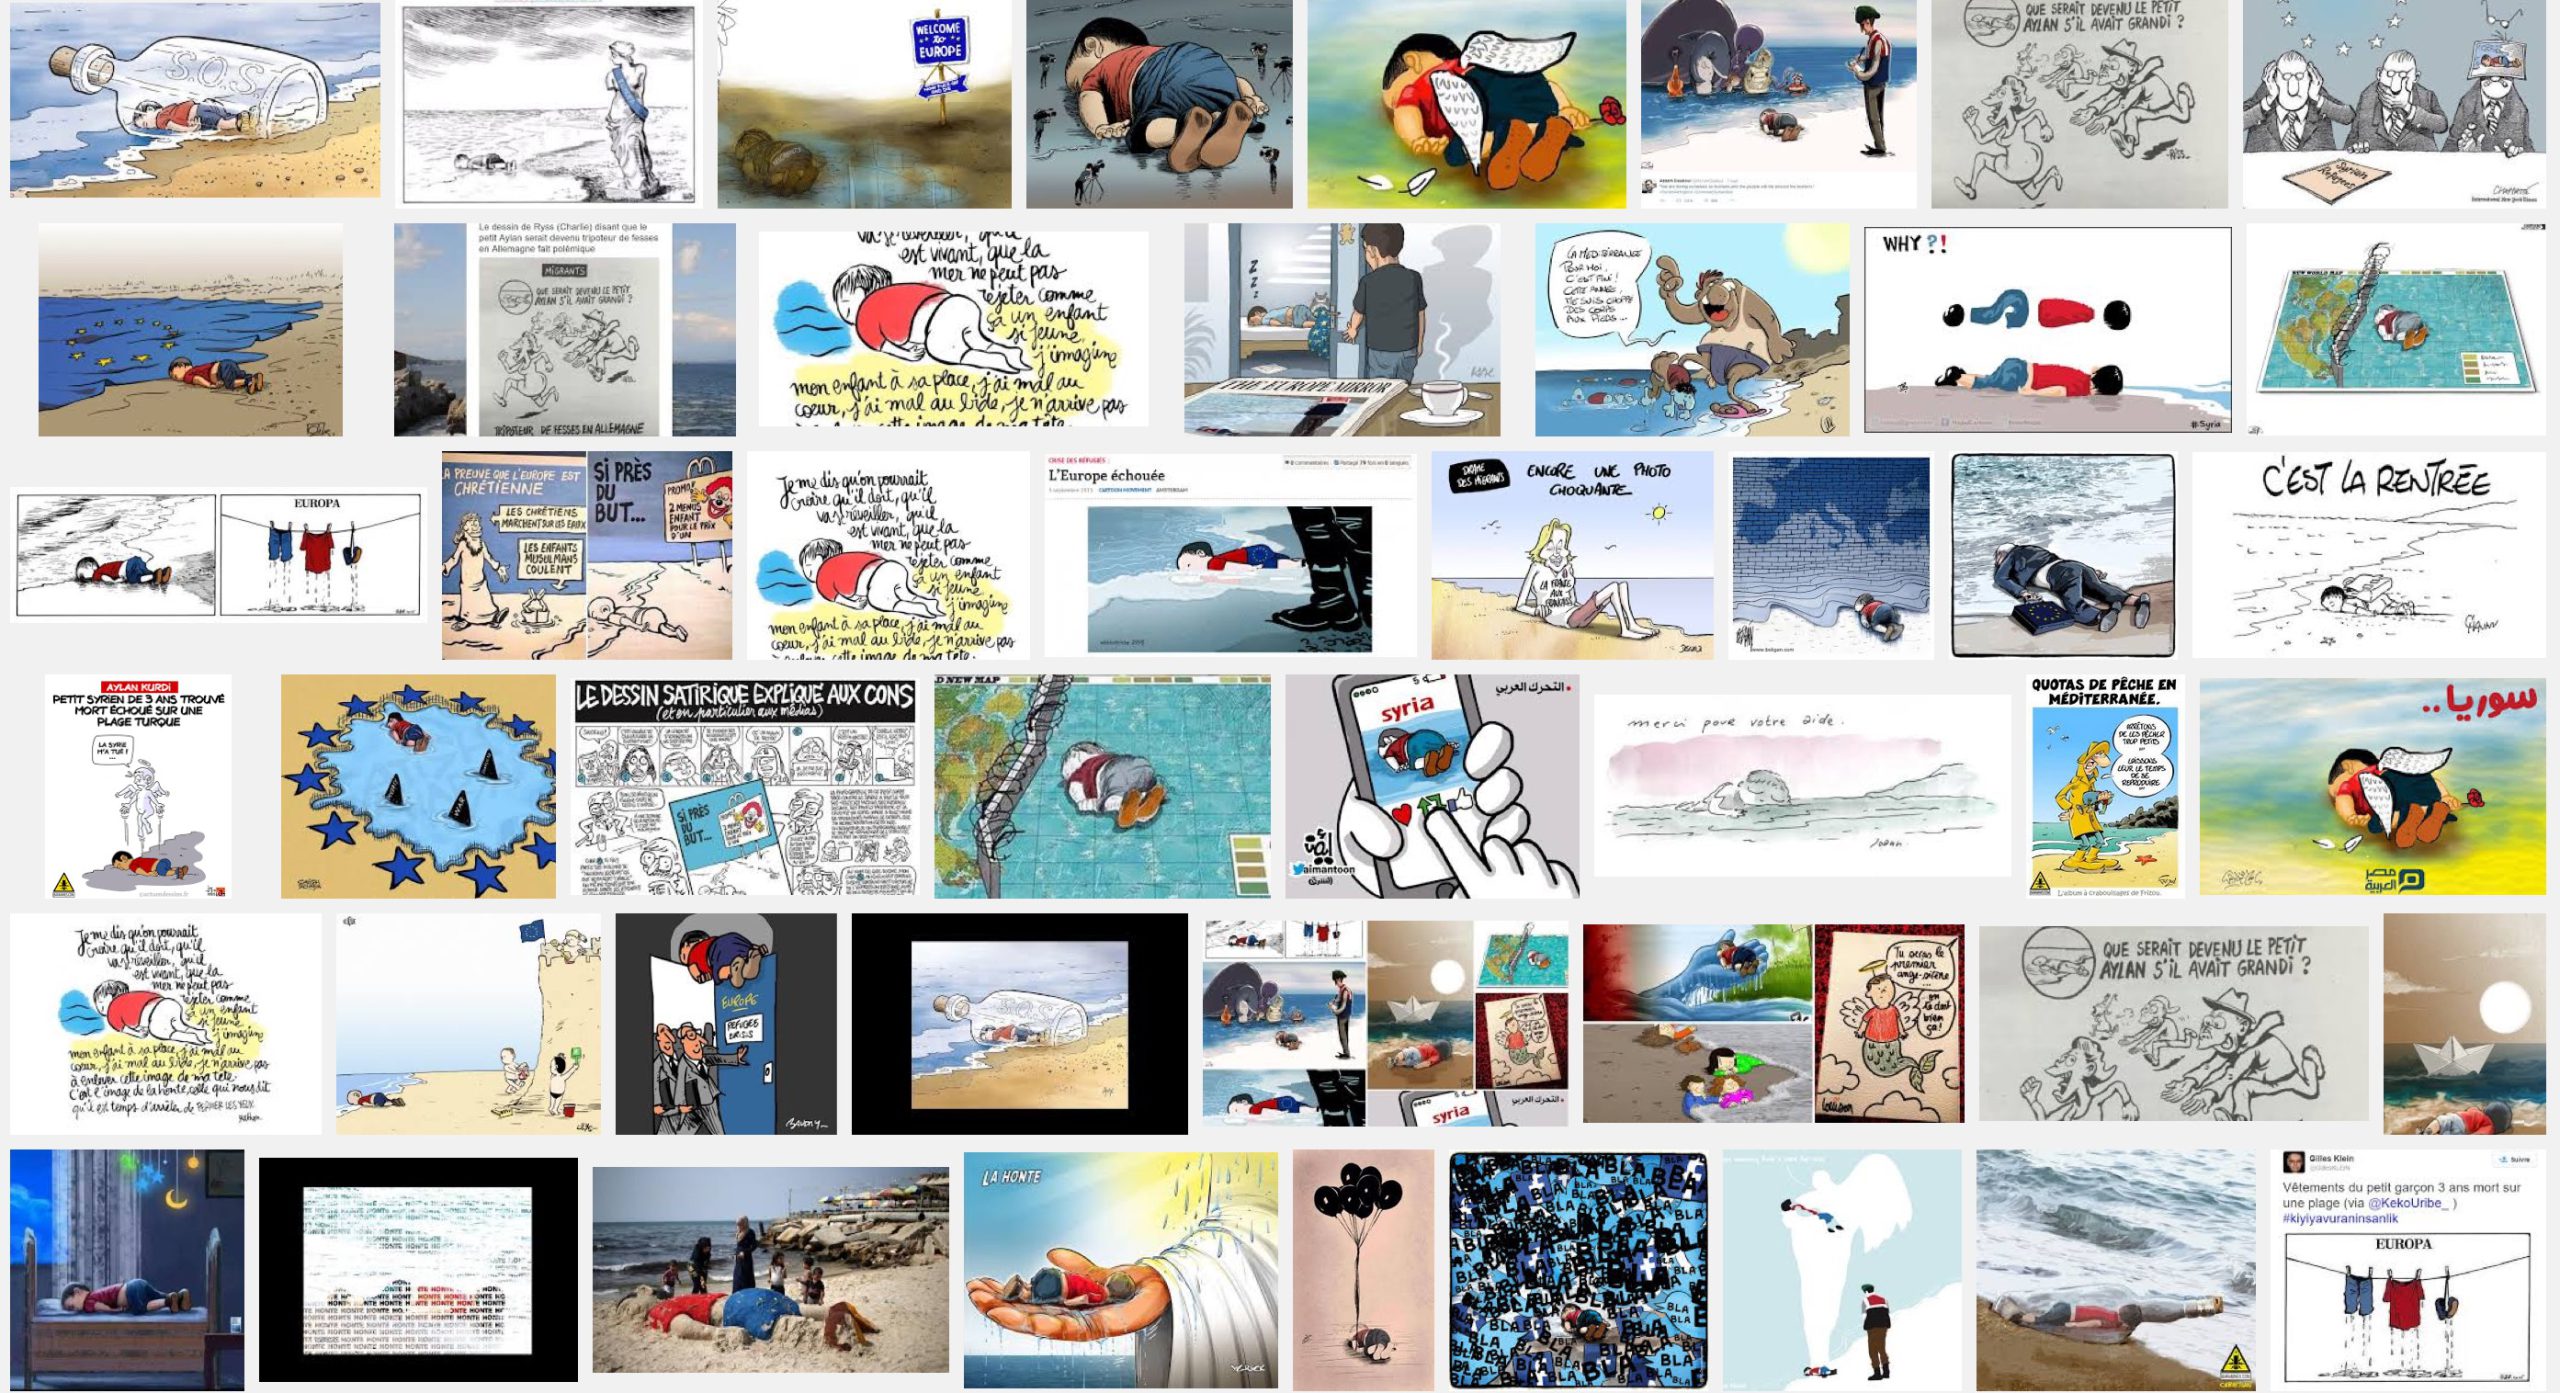 Aylan Kurdi. Premiers résultats d’une recherche image sur Google. 